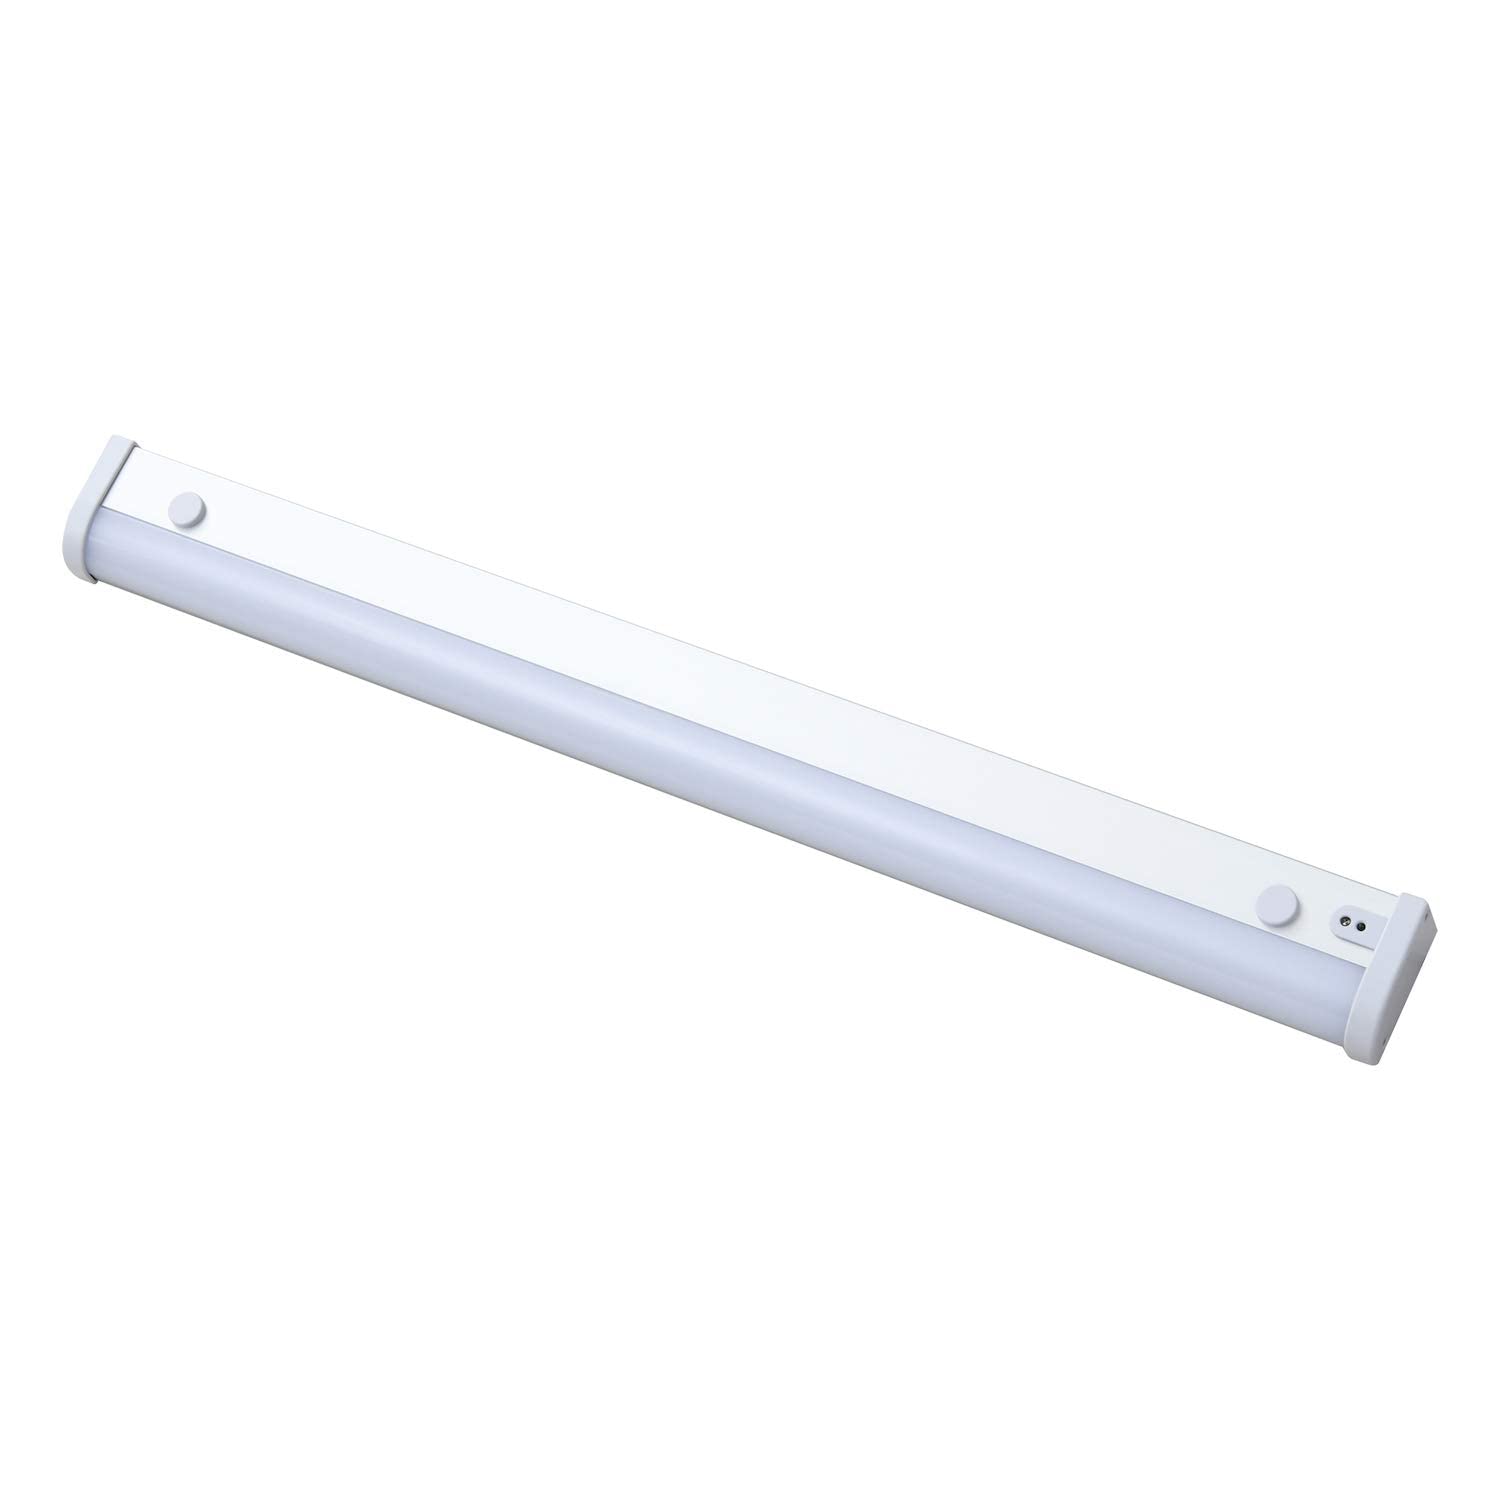 [山善] LED キッチンライト 多目的灯 近接センサー LEDライト 照明器具 工事不要 電源プラグ付き 820lm (幅45.8cm) LT-C09N ホワイト